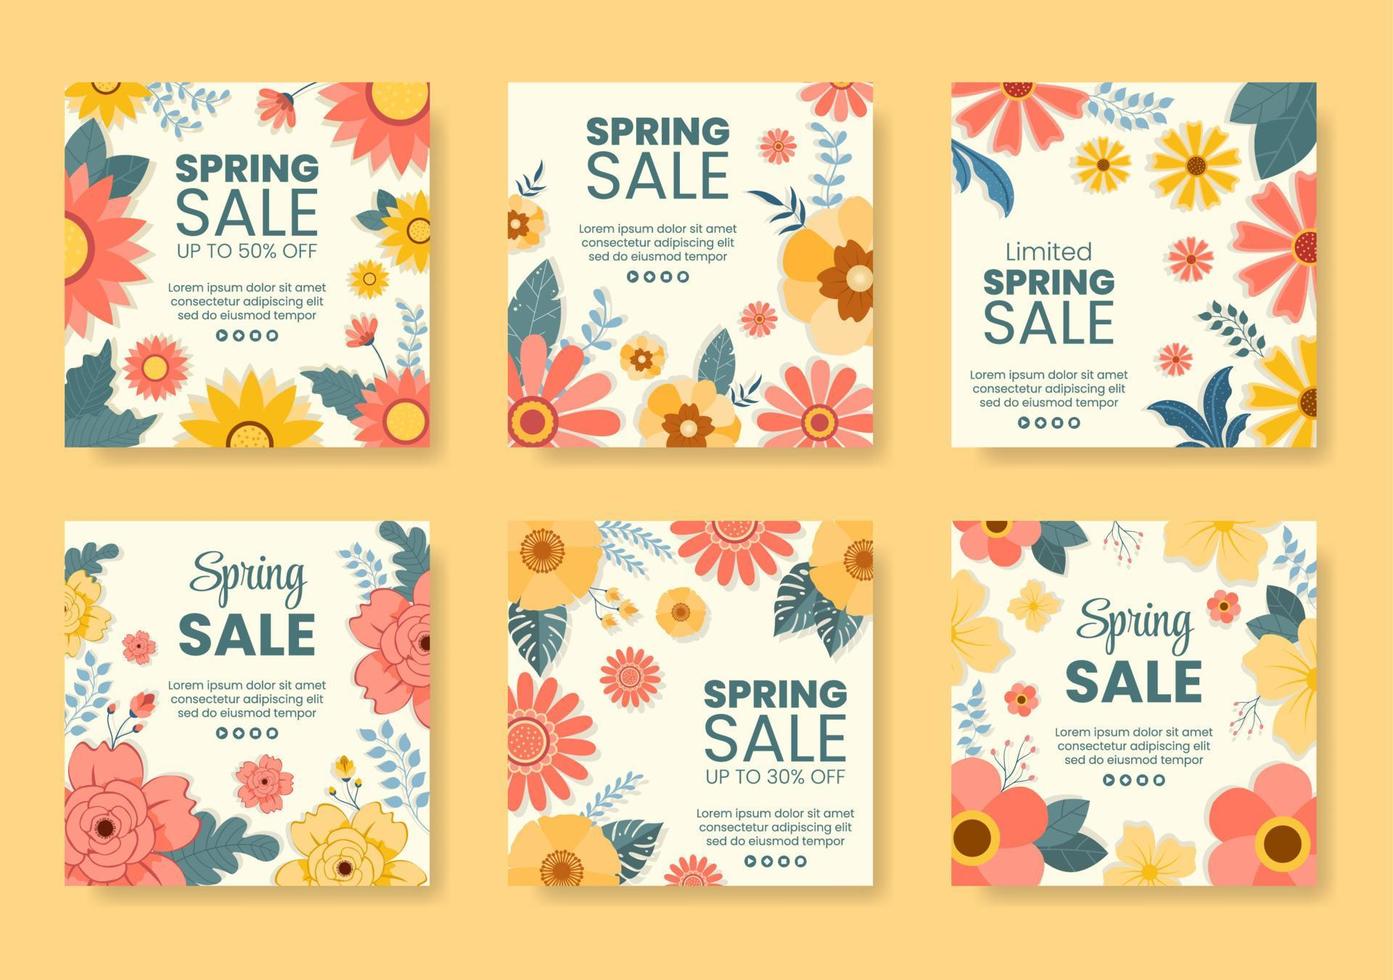 venda de primavera com flores em flor post modelo ilustração plana editável de fundo quadrado para mídias sociais ou cartão de felicitações vetor